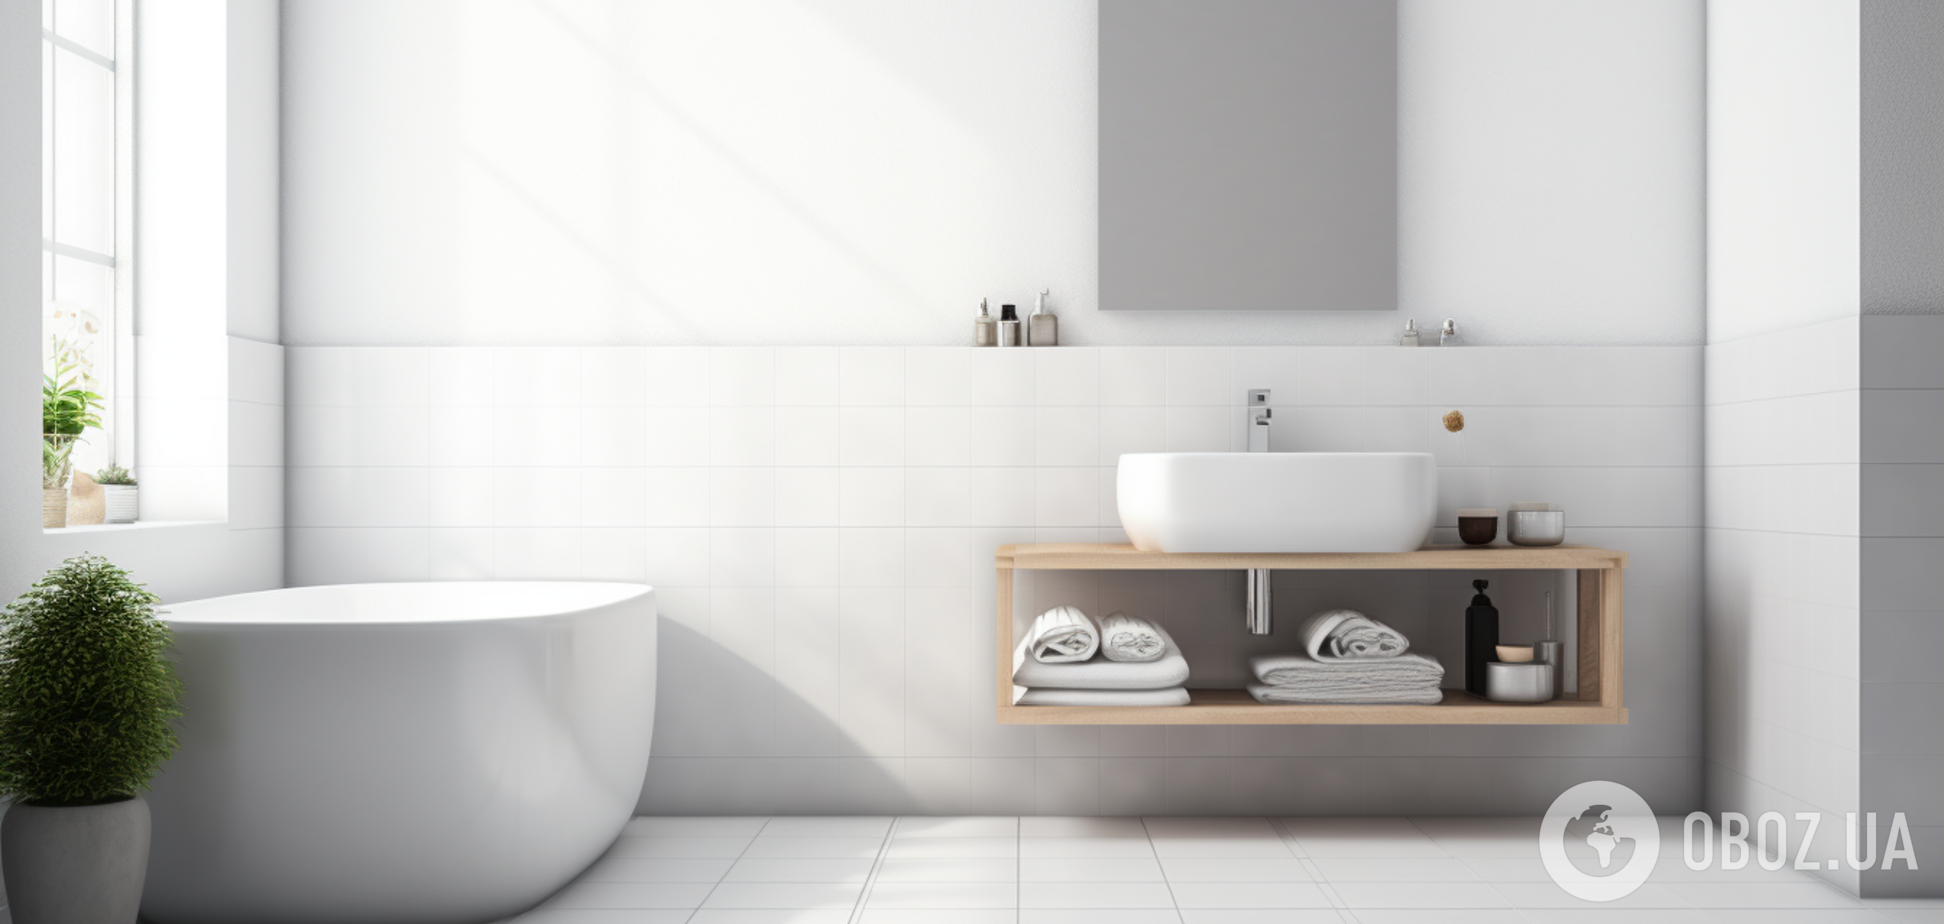 Как достичь максимальной свежести в ванной: простые уловки